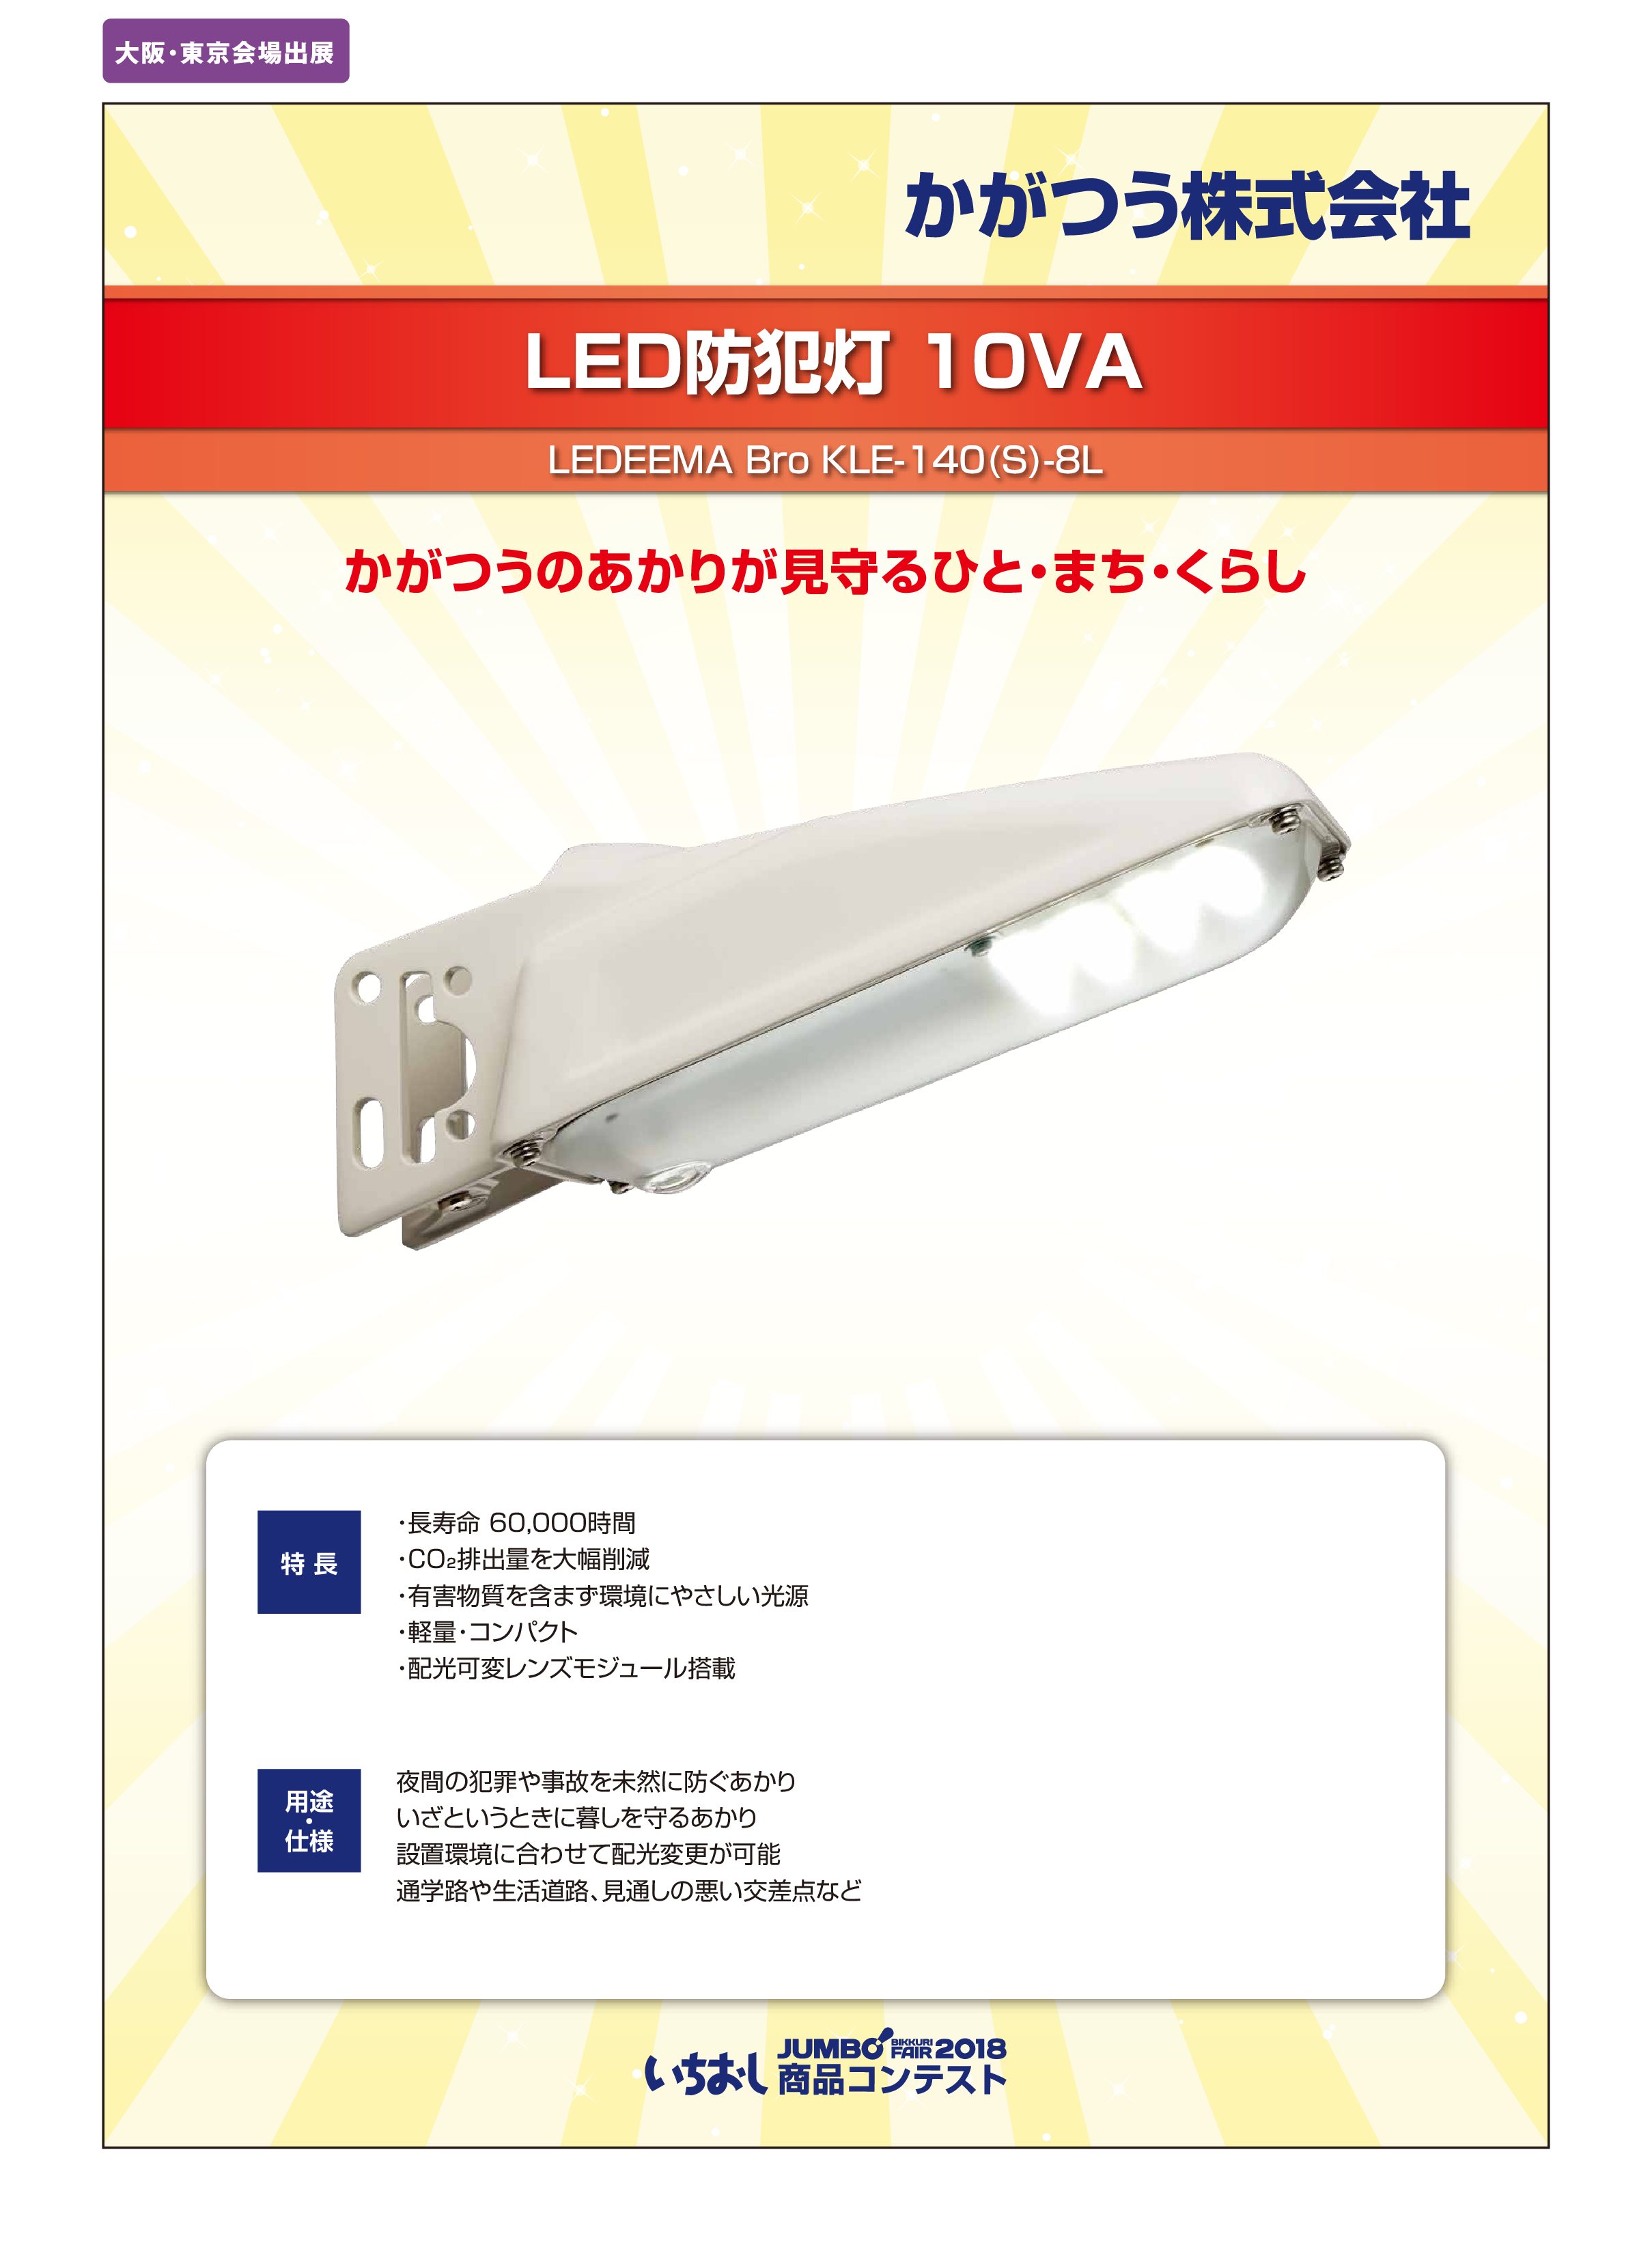 「LED防犯灯 10VA」かがつう株式会社の画像